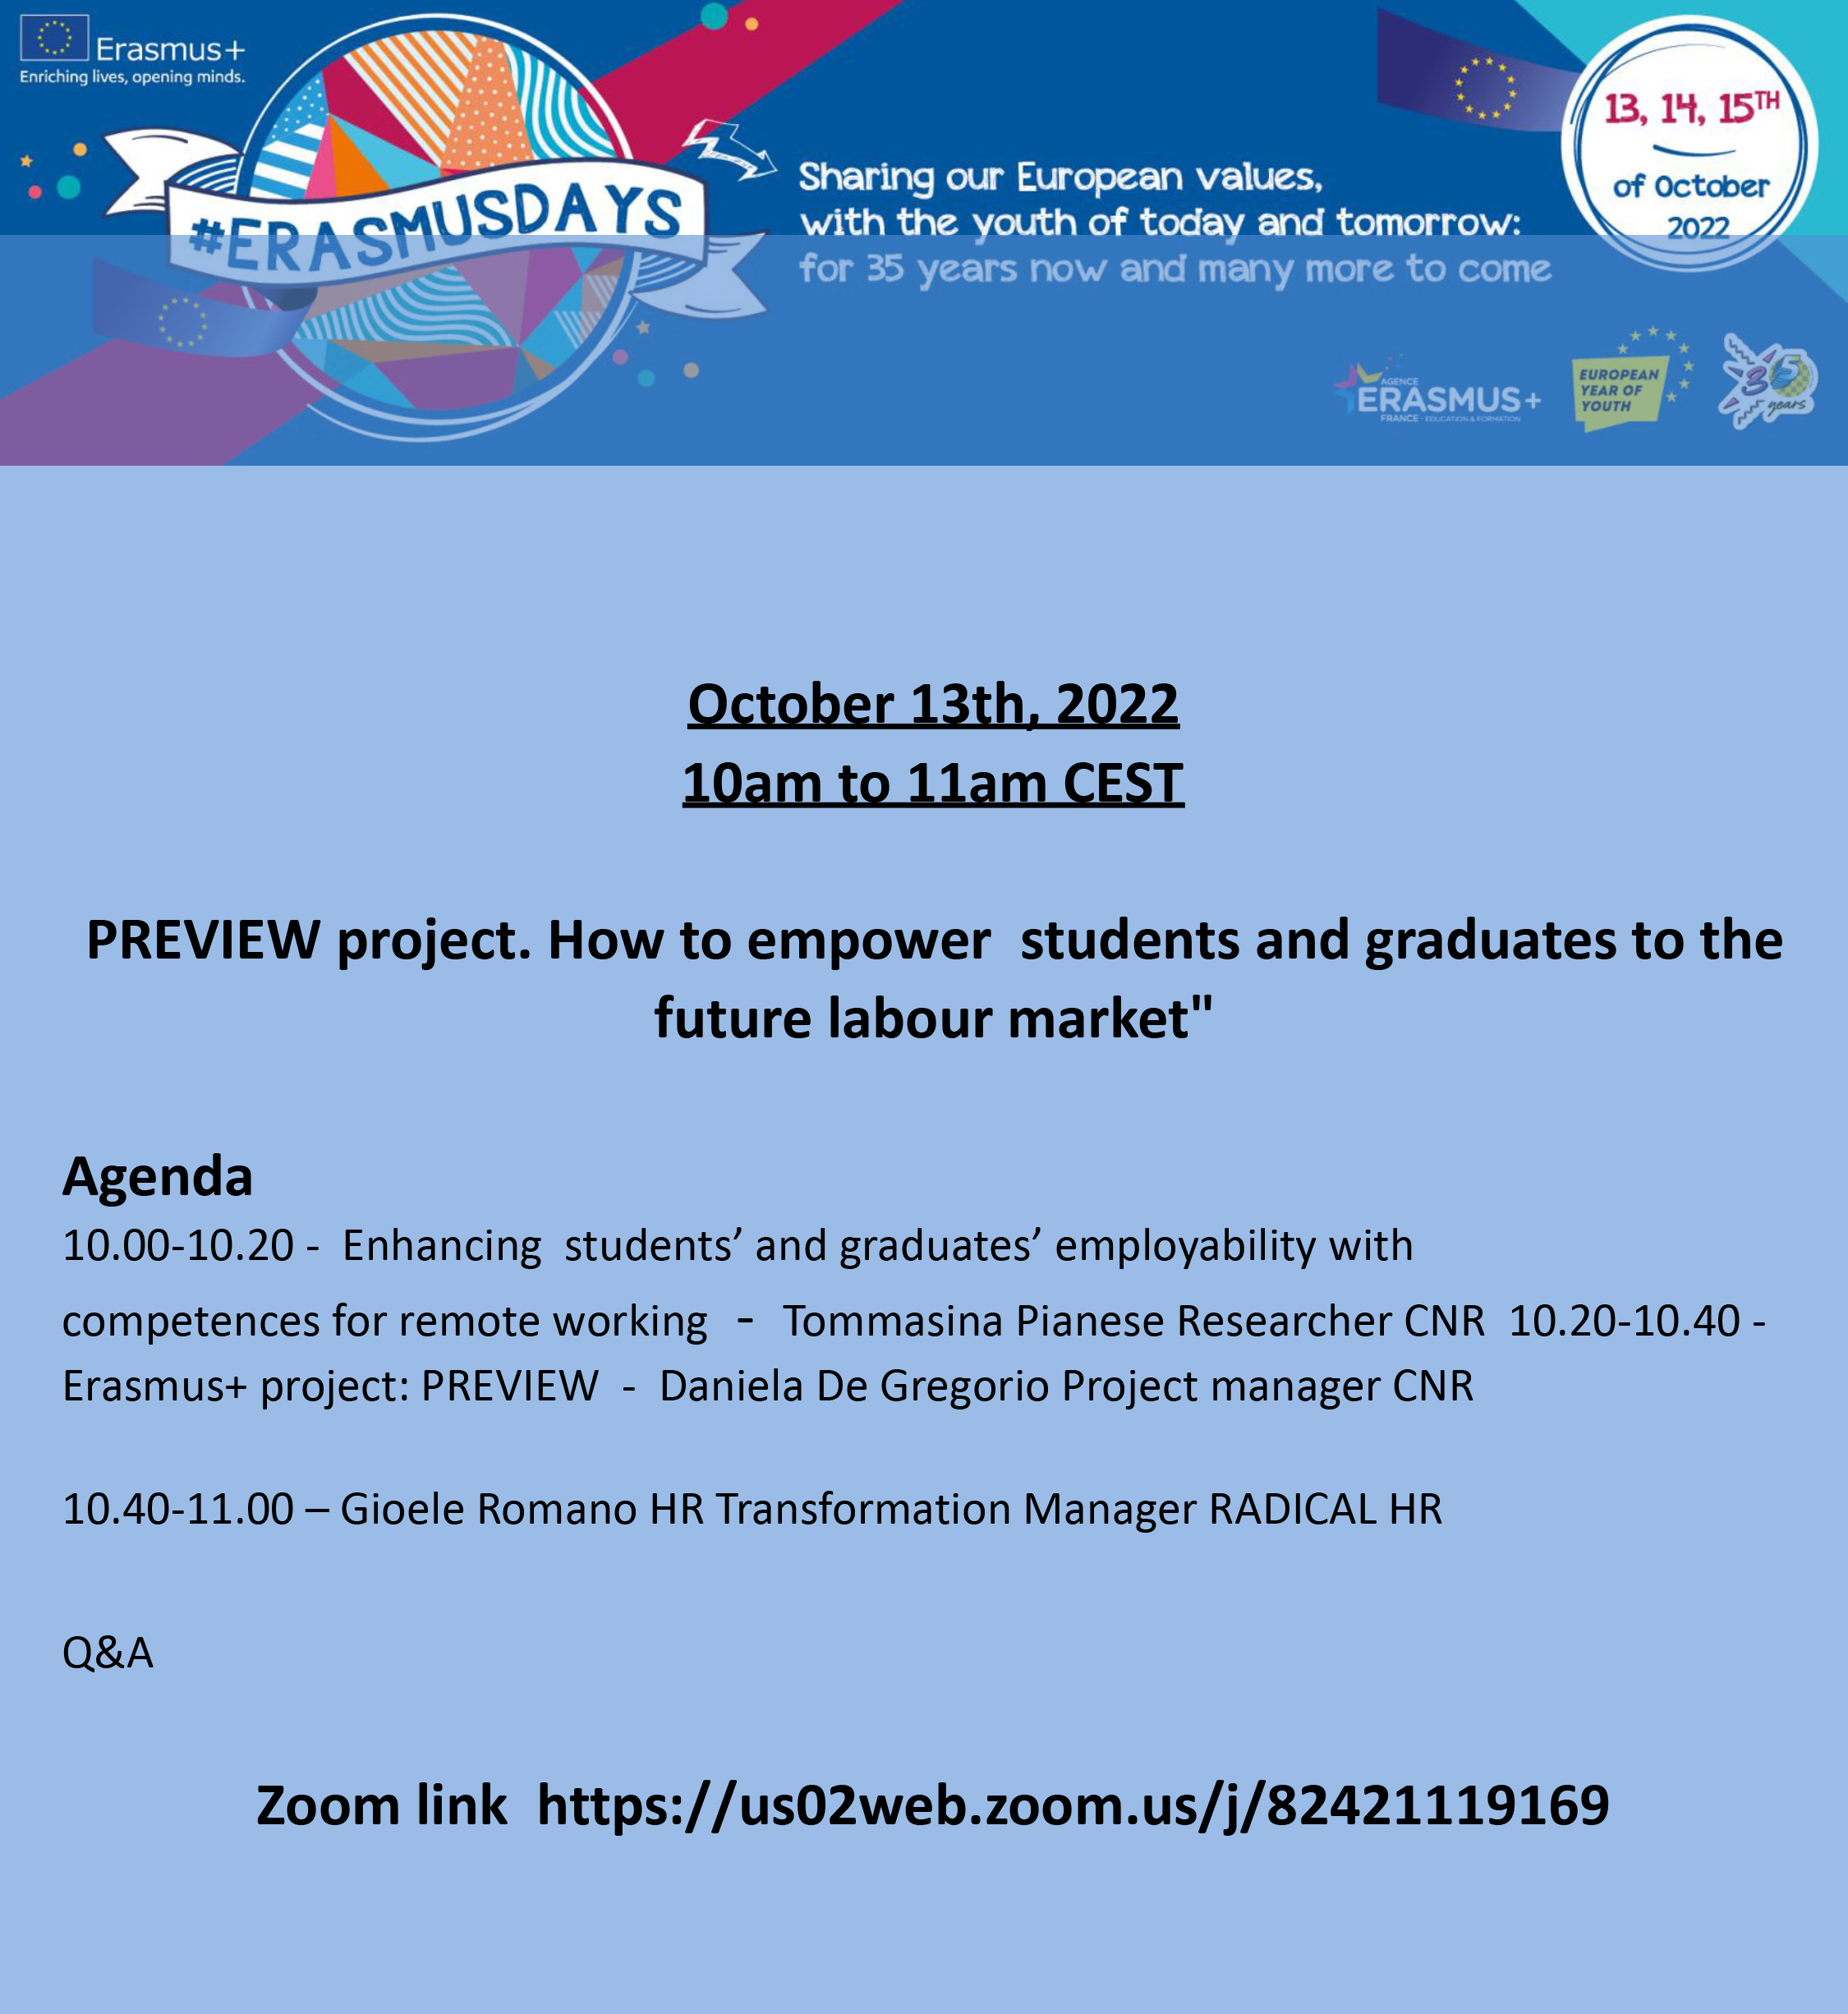 Il progetto Preview agli Erasmusdays 2022